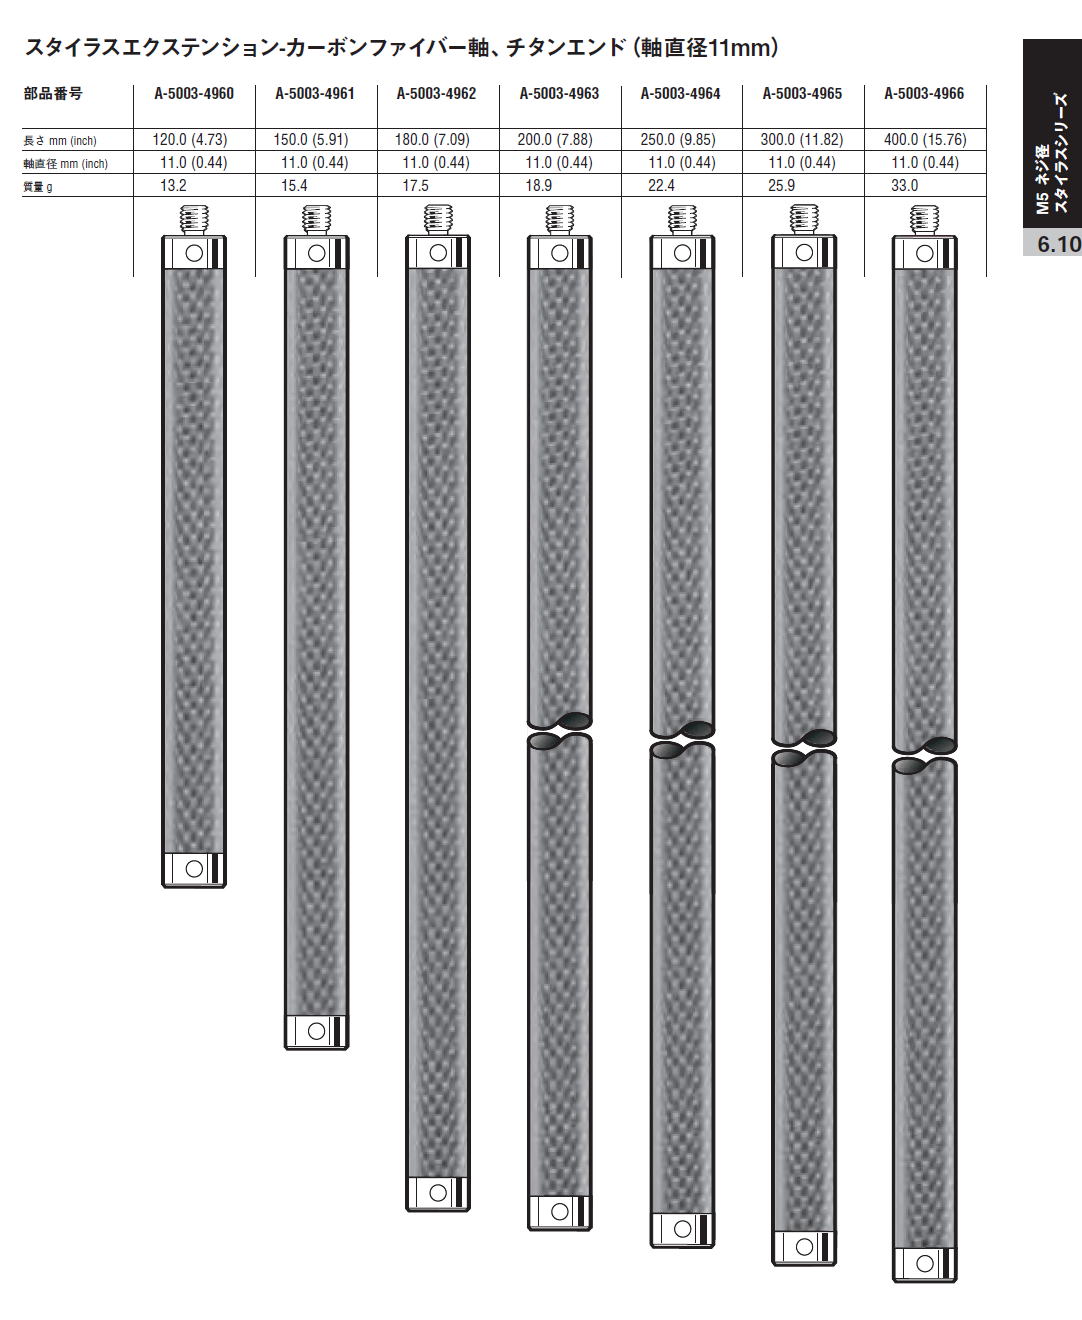 【ション】 レニショー A-5555-0656 スタイラス エクステンション M5 サーモステイブル・カーボンファイバーエクステンション